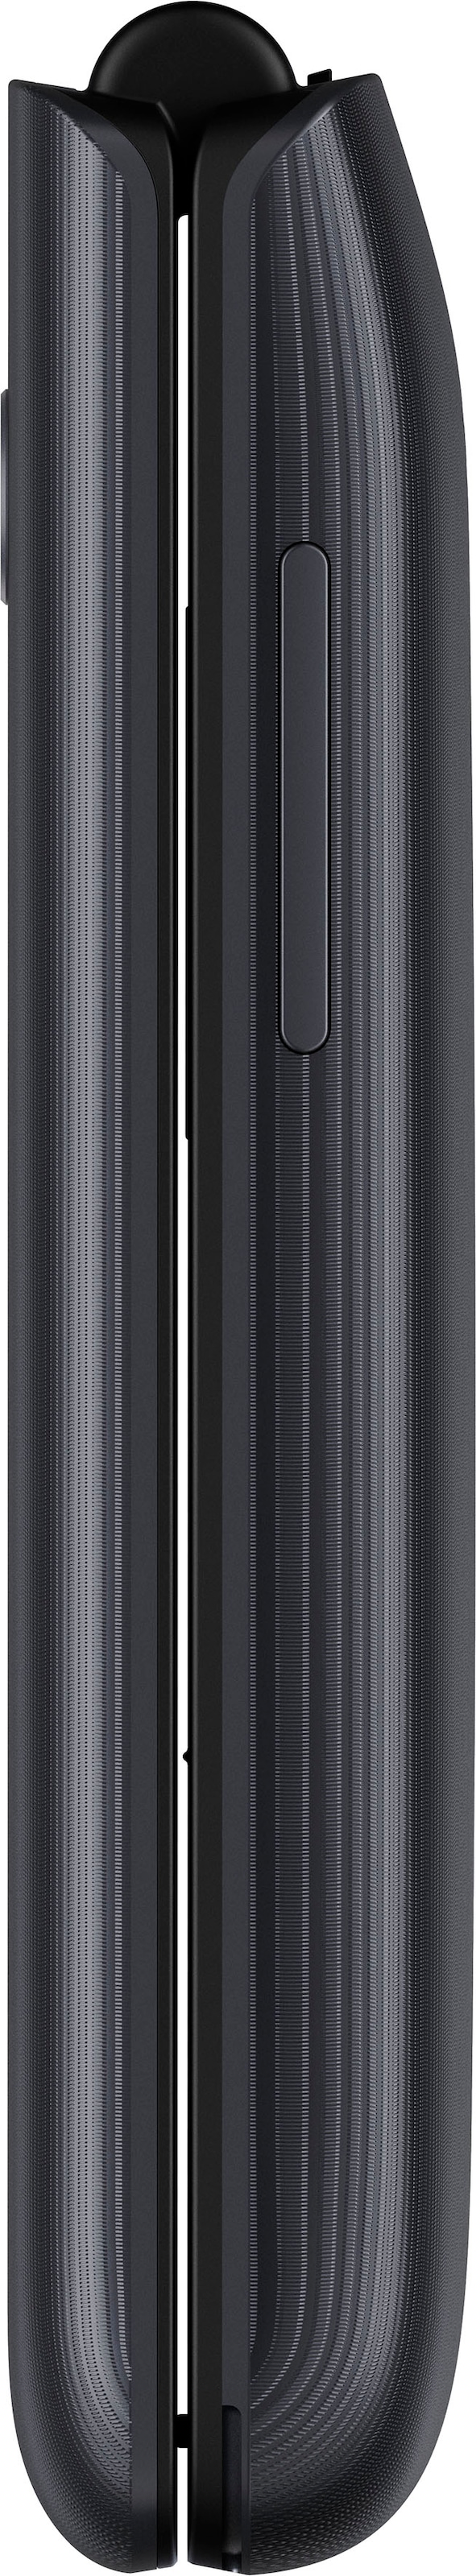 Alcatel Handy Dark 6,1 kaufen online Zoll, 0,13 MP Gray, cm/2,4 GB Speicherplatz, Kamera 1,3 »3082«